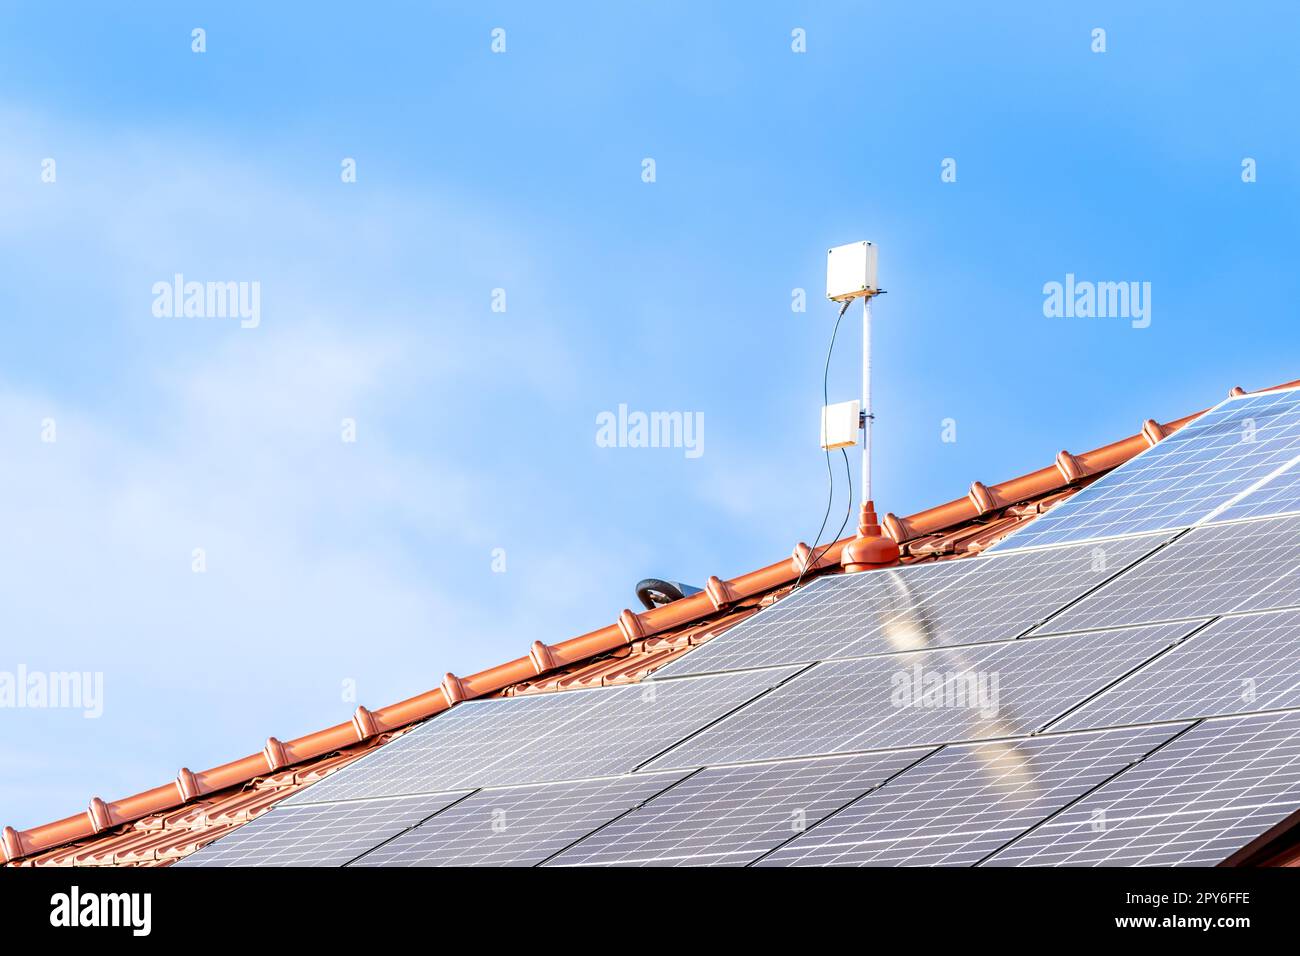 Solarpaneele zur Erzeugung von Strom aus der Sonne auf dem Dach. Speicherplatz kopieren Stockfoto